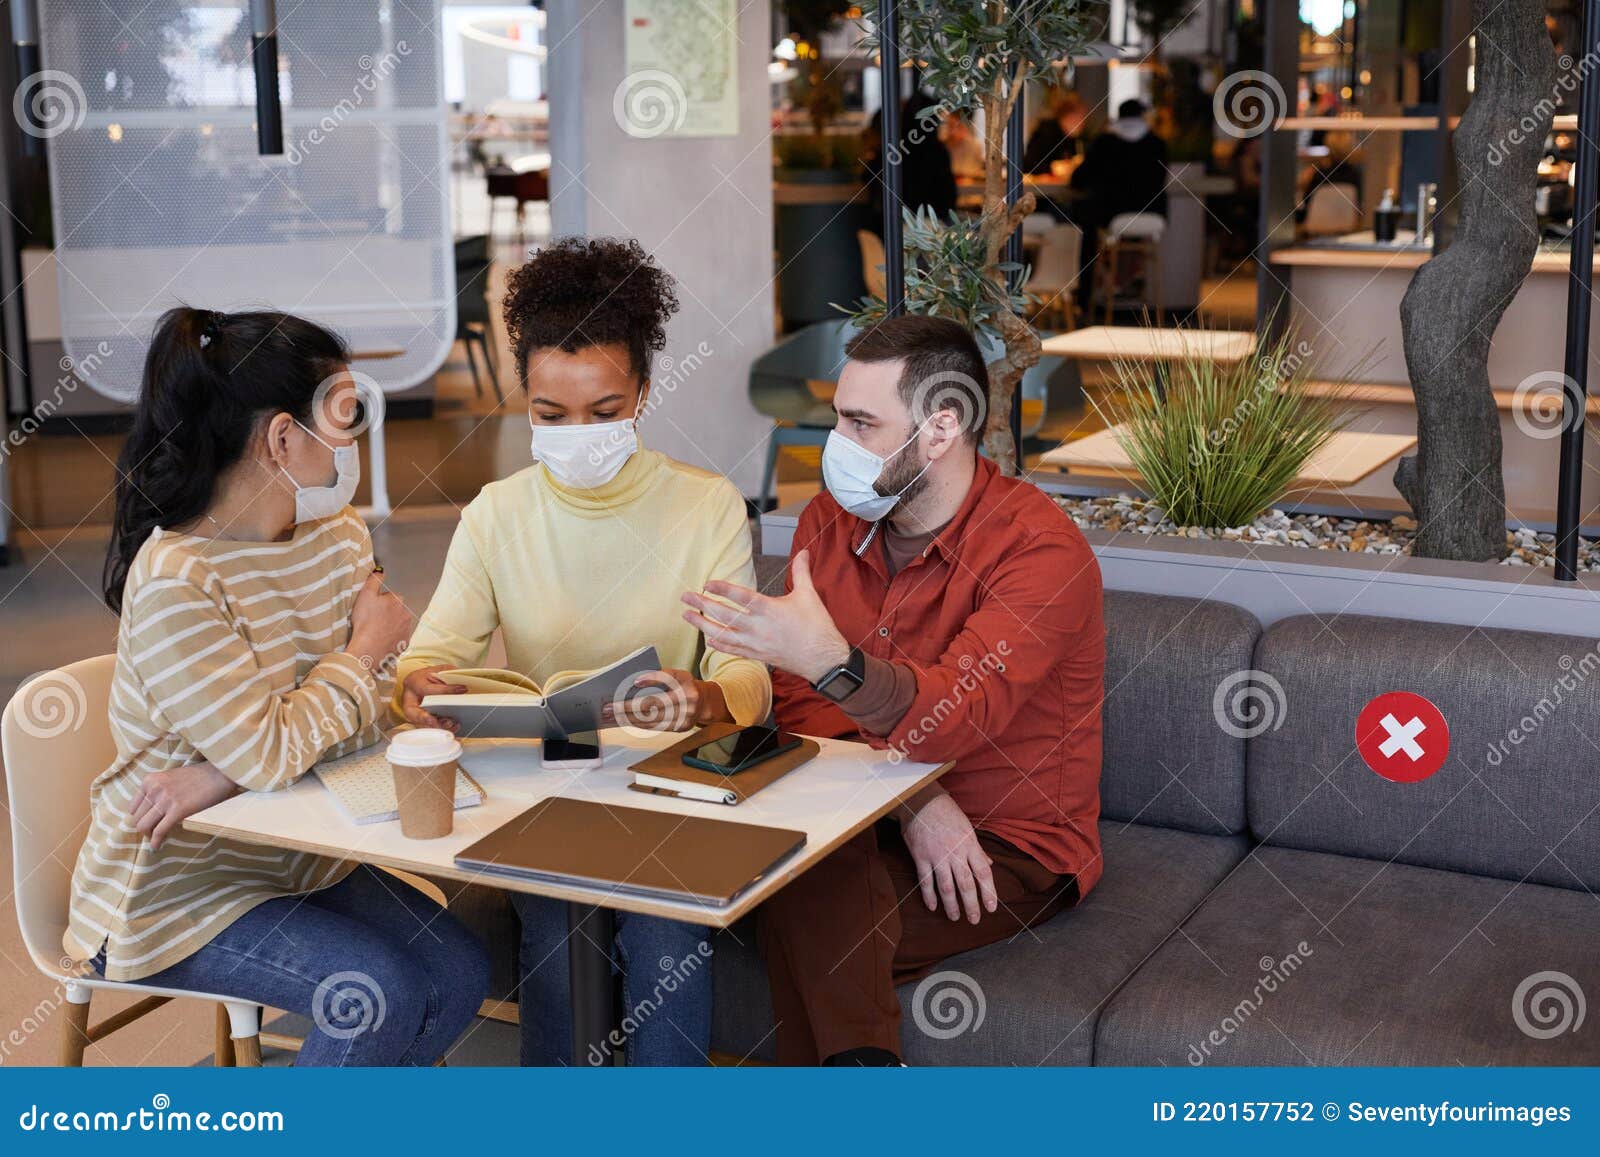 Nogle gange nogle gange krone bleg Gruppe Von Leuten, Die Während Des Treffens Im Café Masken Tragen Stockfoto  - Bild von arbeit, frauen: 220157752